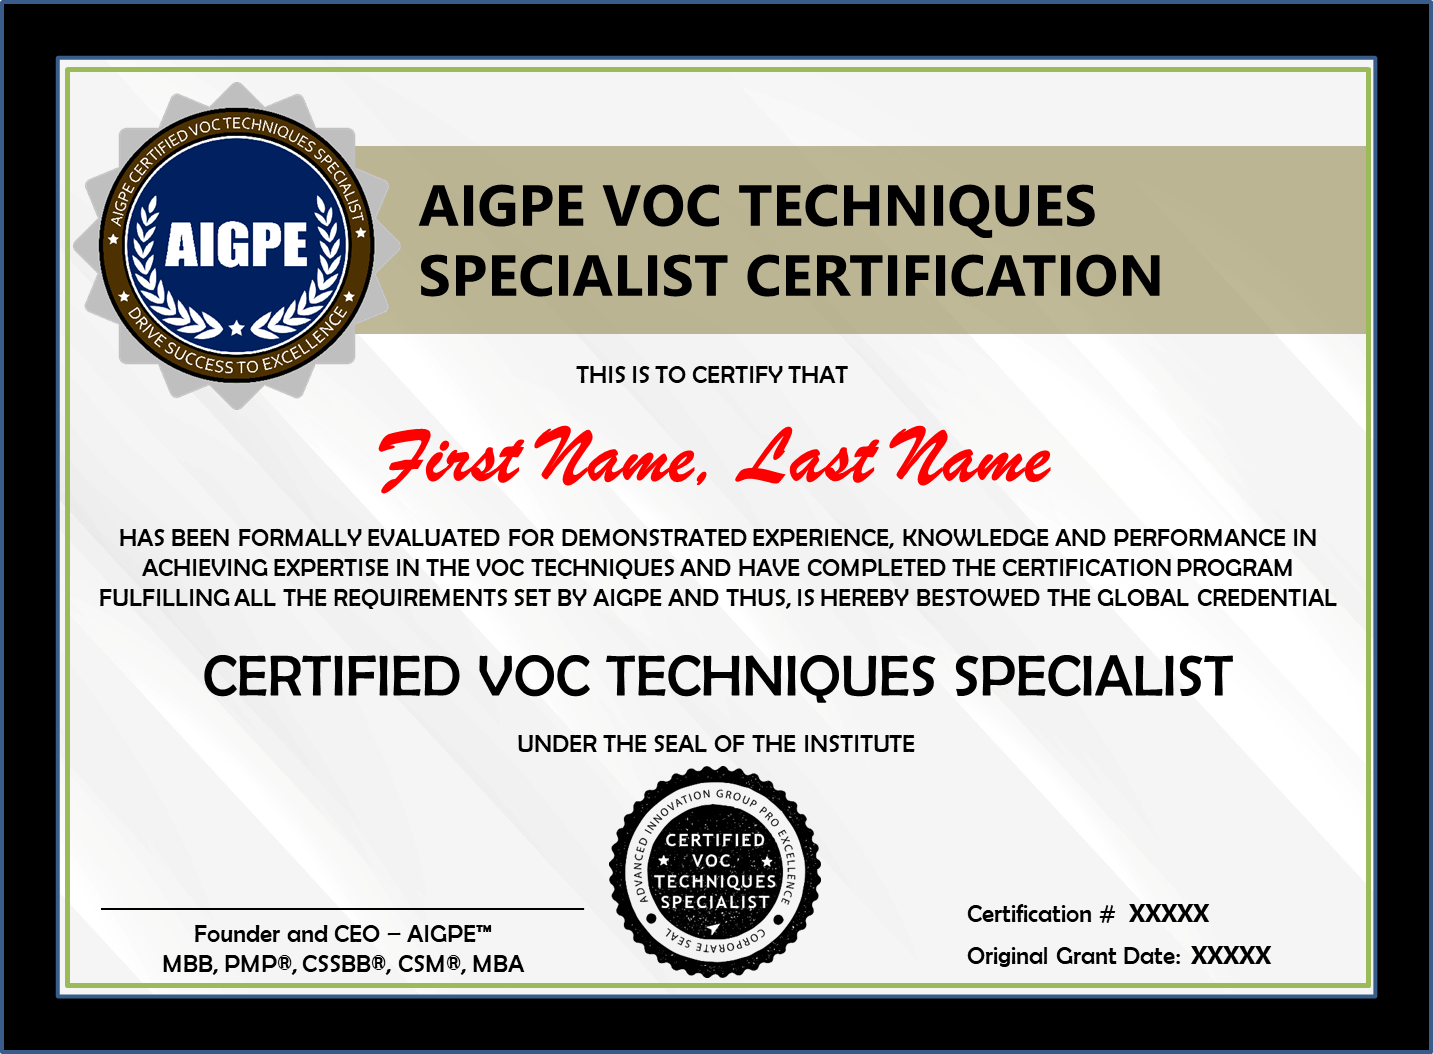 VOC Techniques Specialist Certification AIGPE